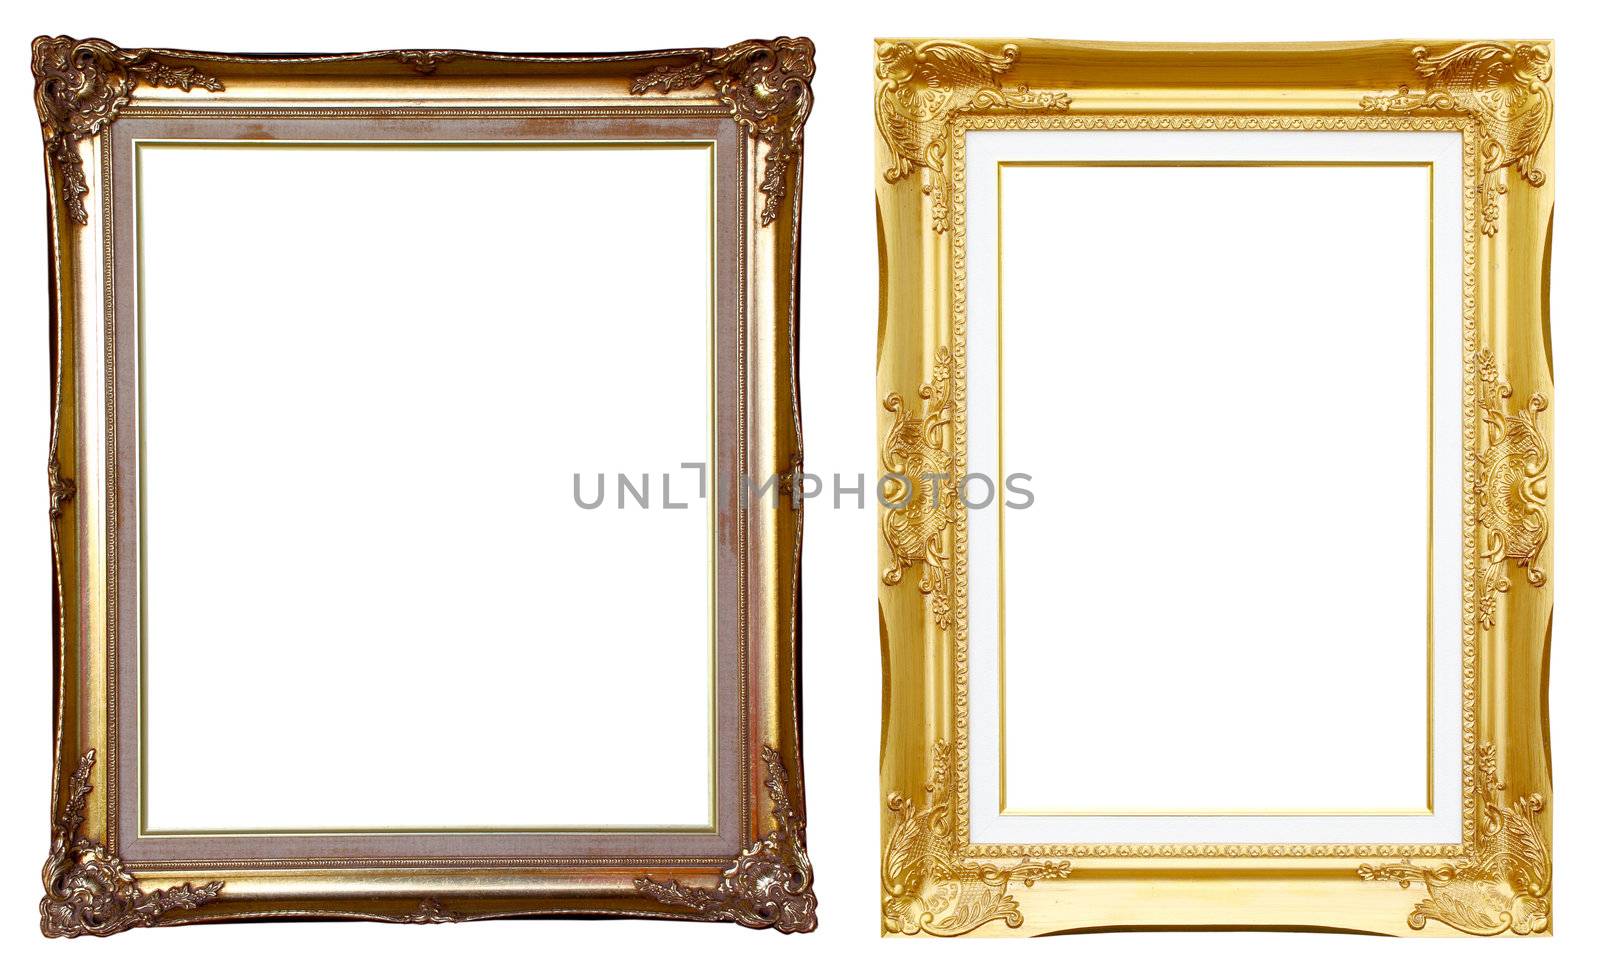 2 ancient golden frame on white